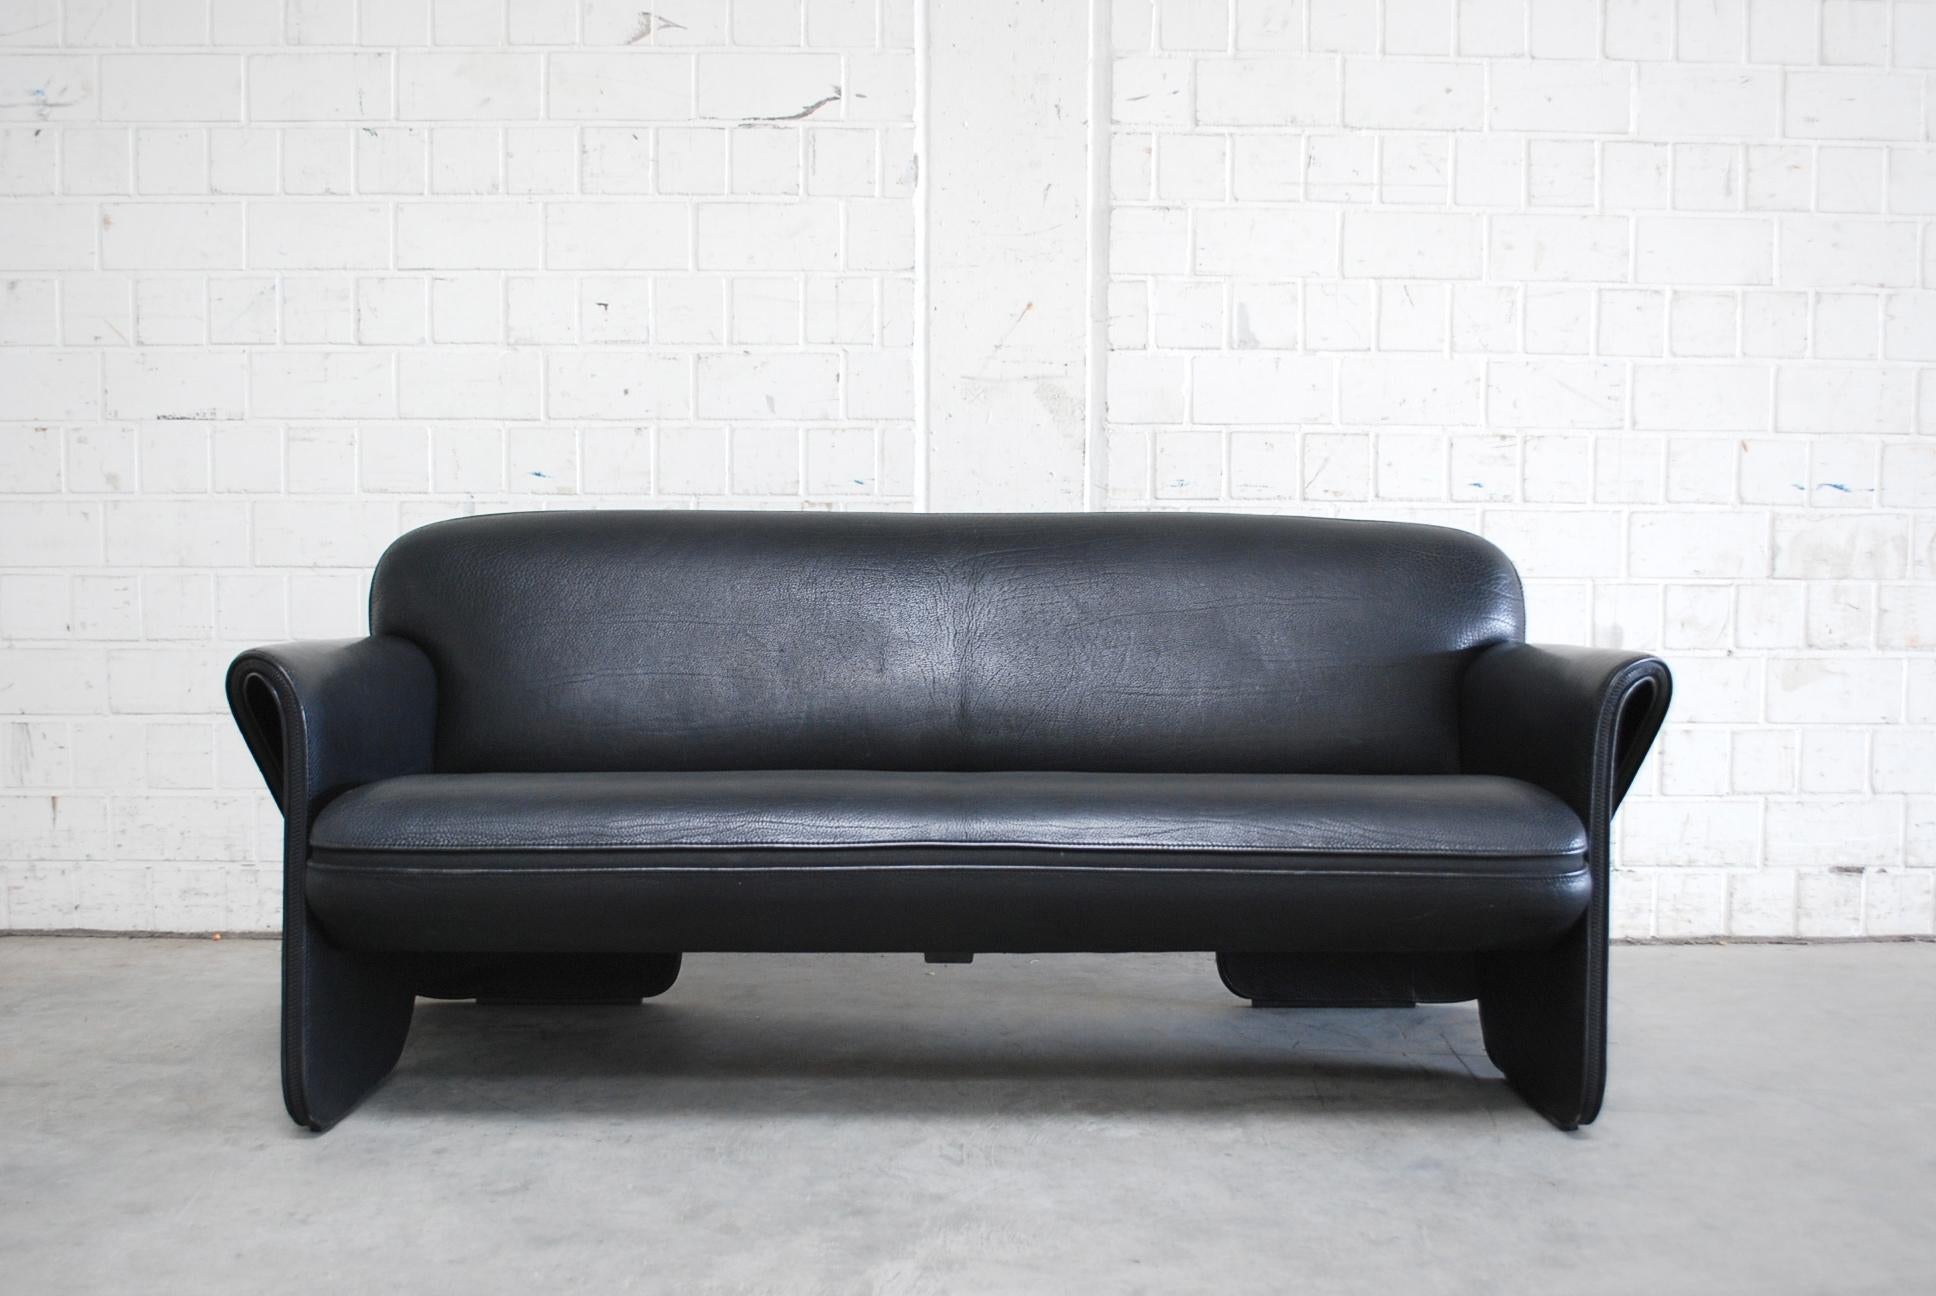 De Sede Modell Ds 125 Hals Ledersofa.
Entwurf des deutschen Designers Gerd Lange.
3-Sitzer-Sofa mit skulptural geschwungenen Linien und Reißverschlussdetails an den Armlehnen.
Es ist ein dickes Nackenleder in hellschwarzer Farbe.
Es ist nicht